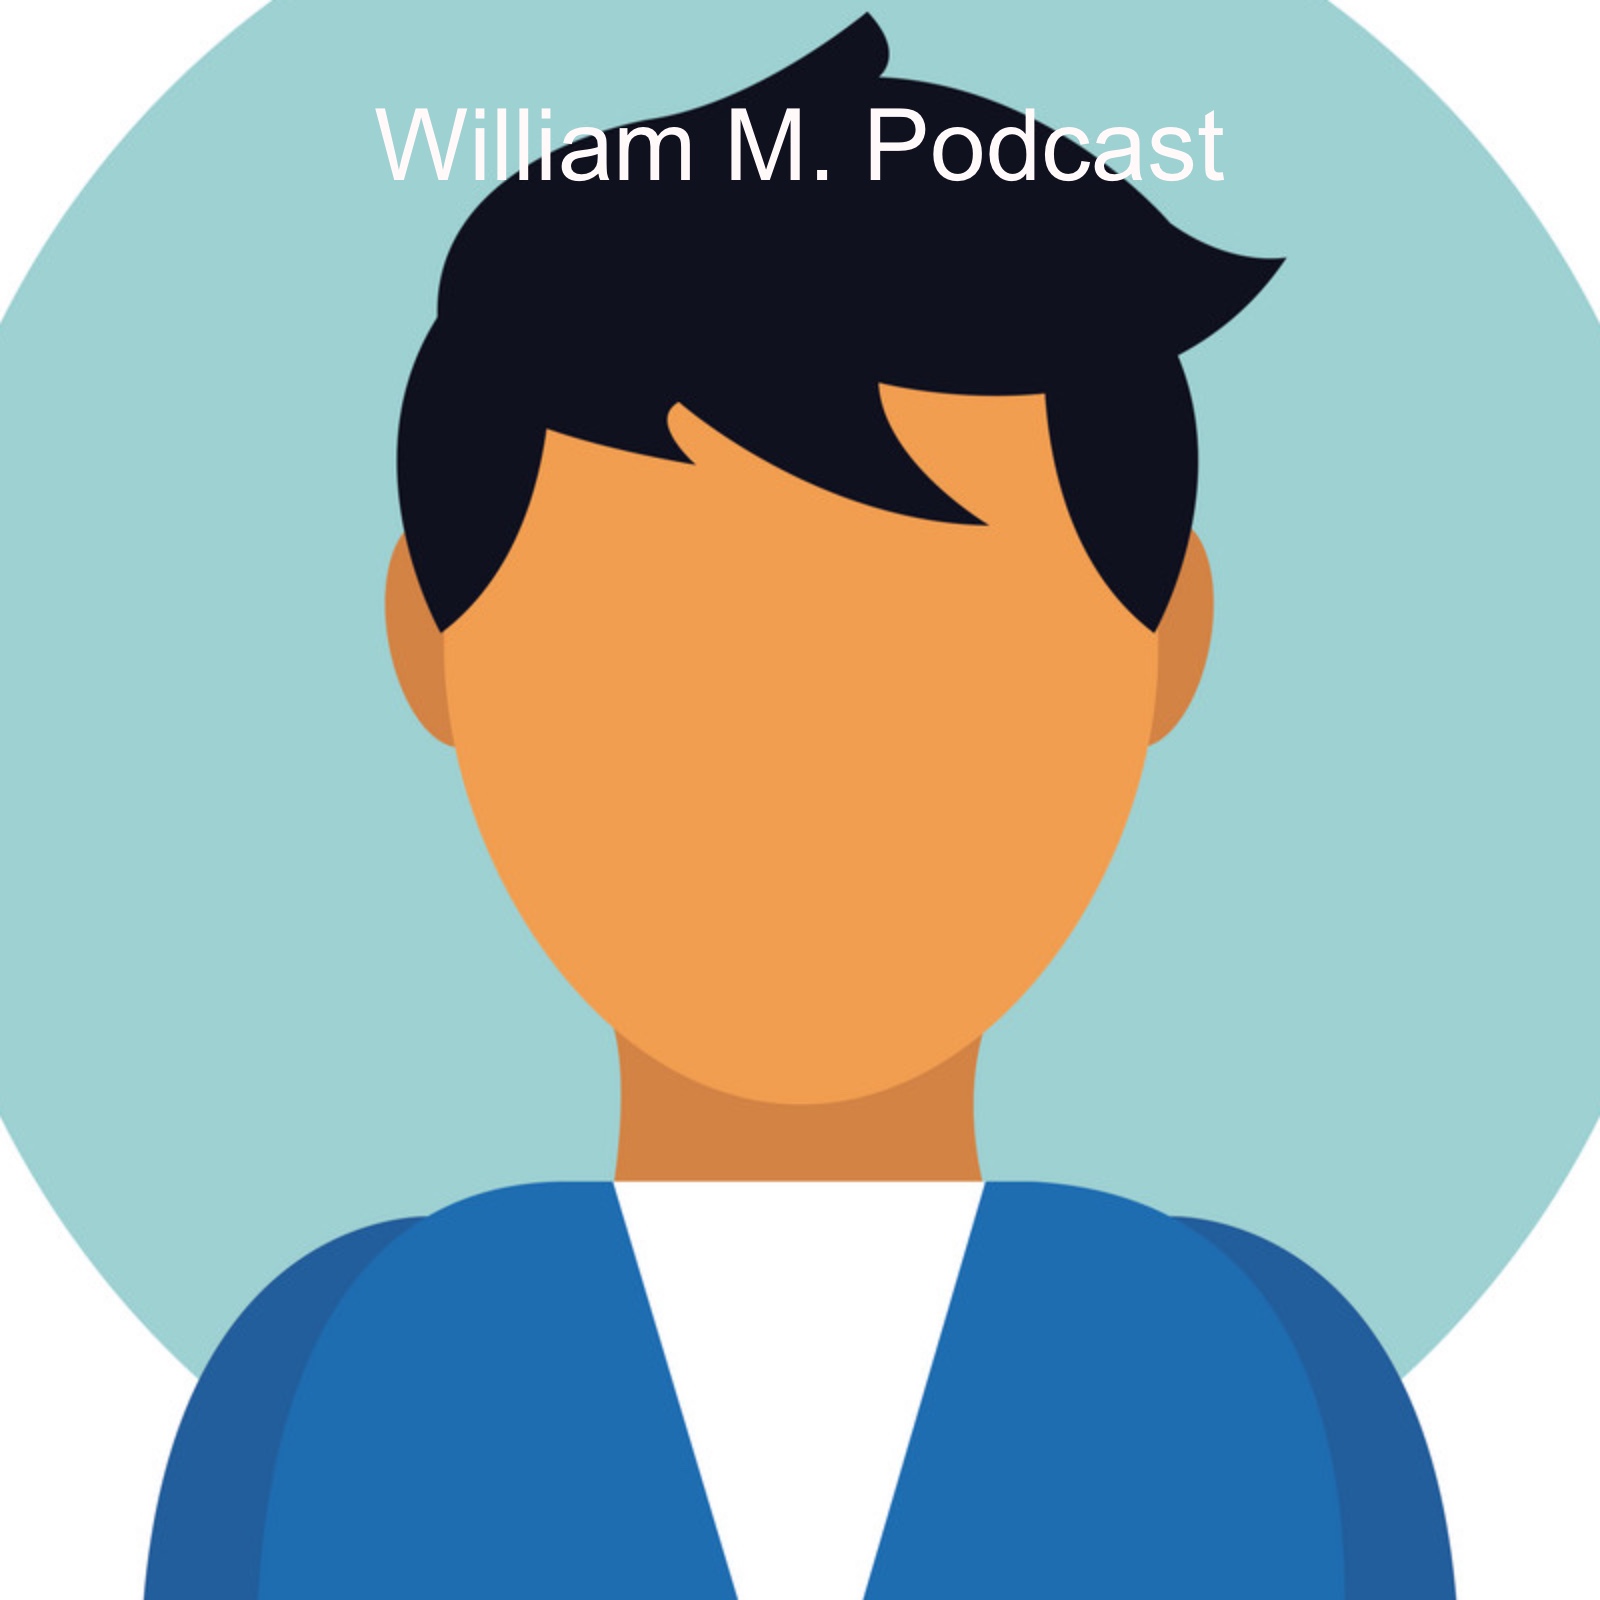 William M. Podcast